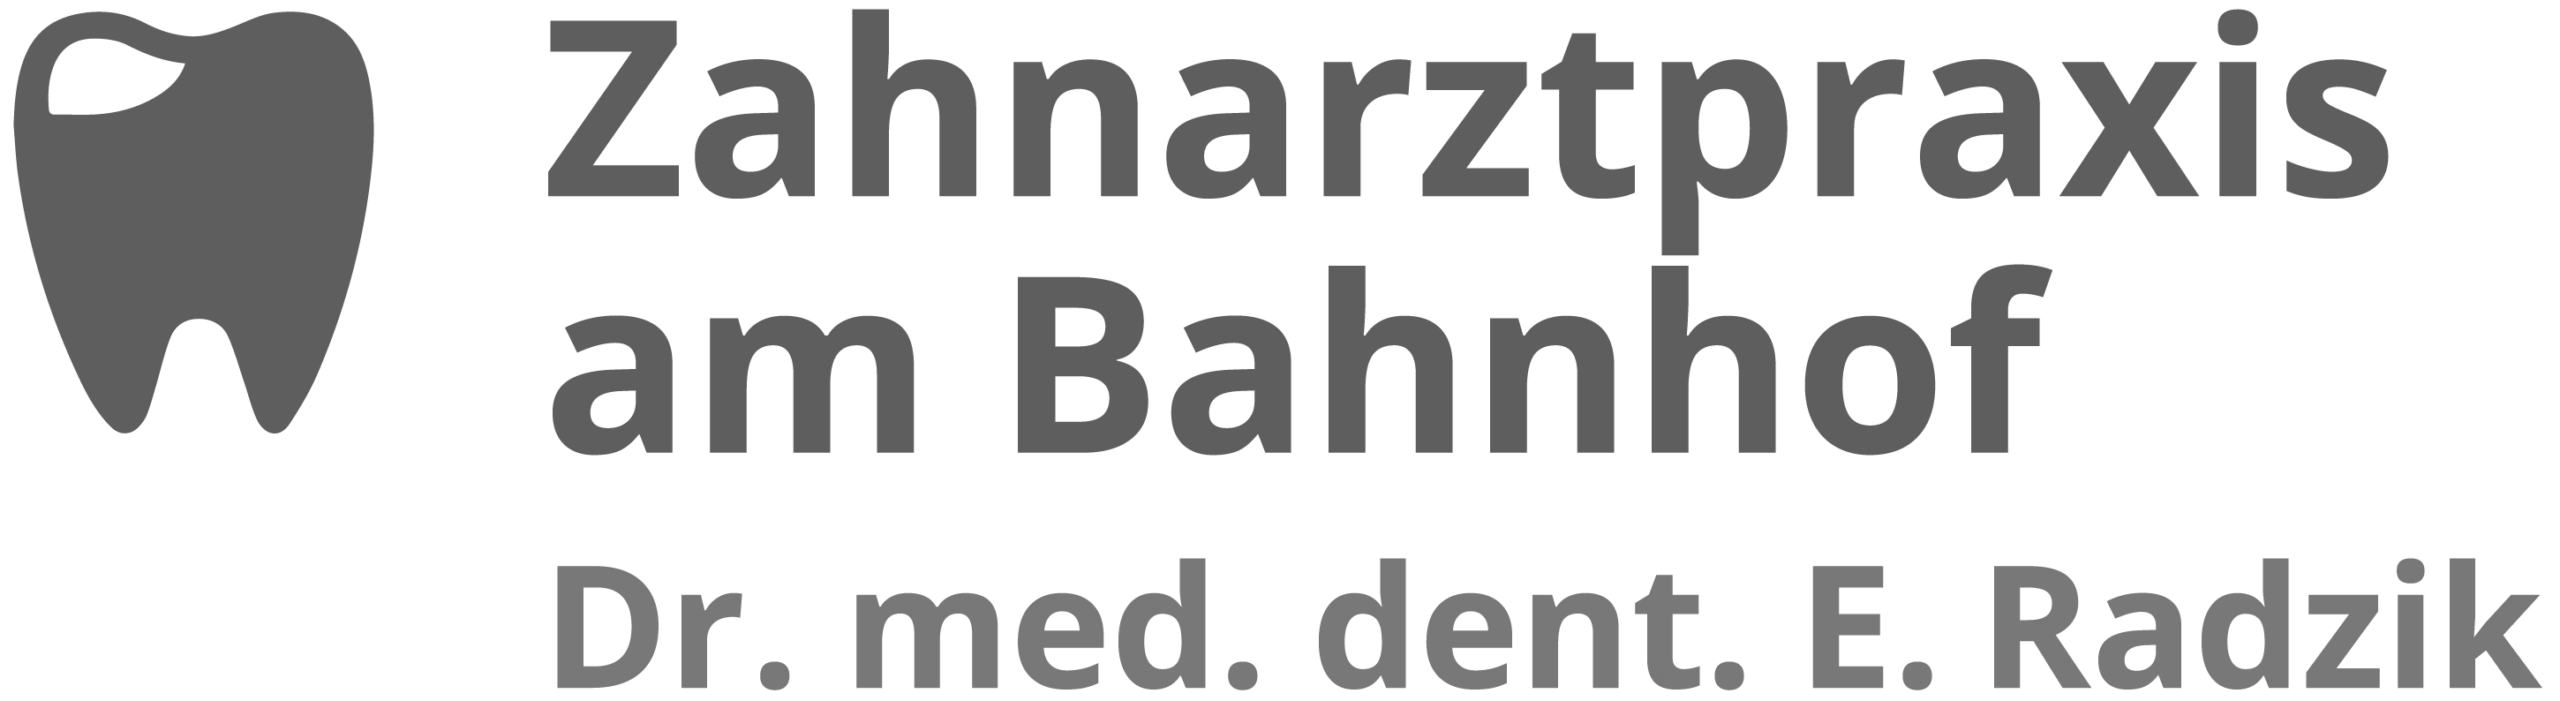 Fretz Garten Logo mod